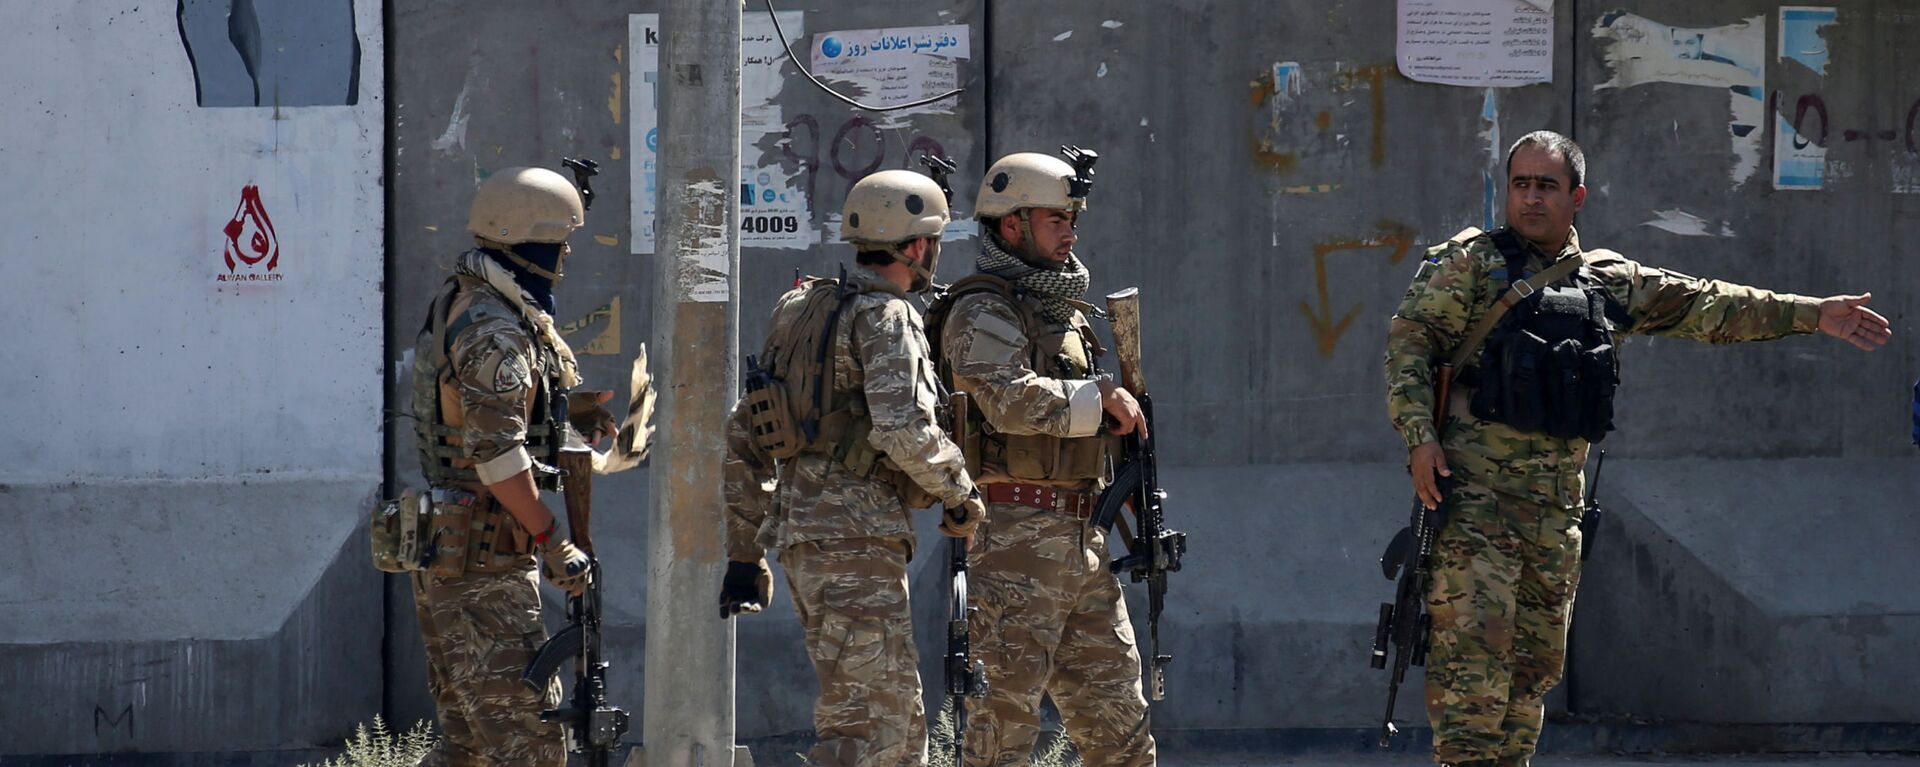 Полицейские возле места взрыва в Кабуле, Афганистан, 17 сентября - Sputnik Тоҷикистон, 1920, 10.04.2021